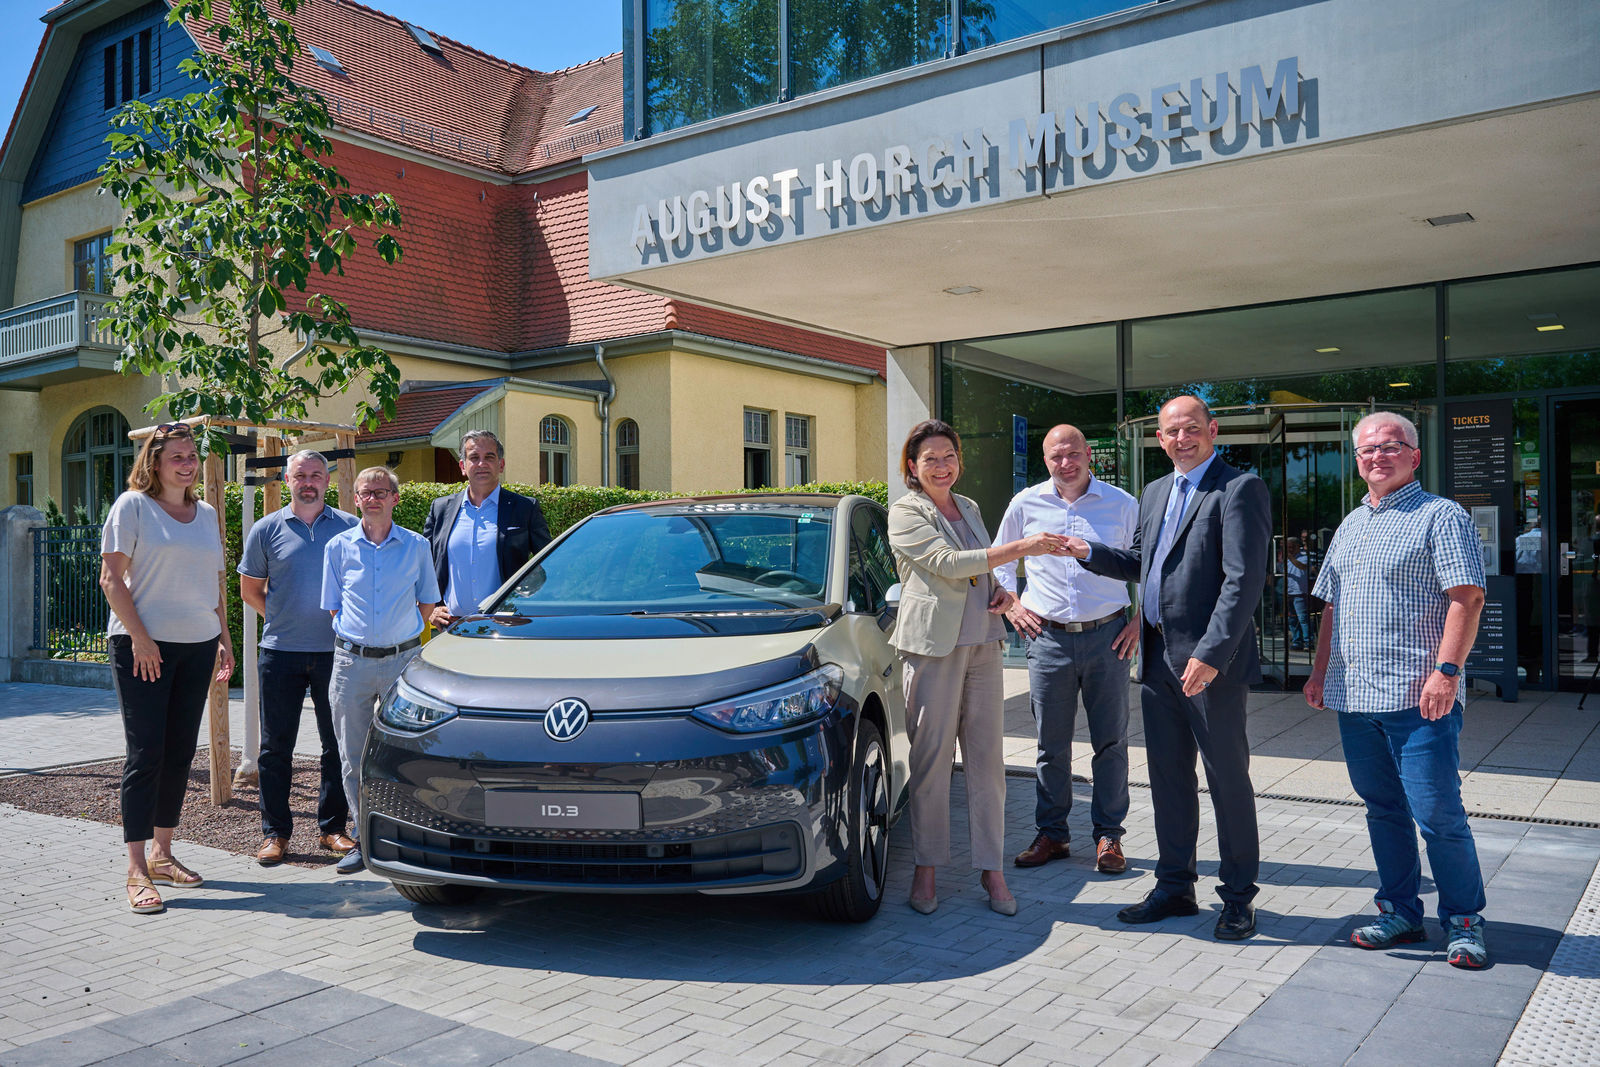 Symbol einer neuen Ära: Volkswagen zeigt den ersten  gebauten ID.3 im August Horch Museum Zwickau